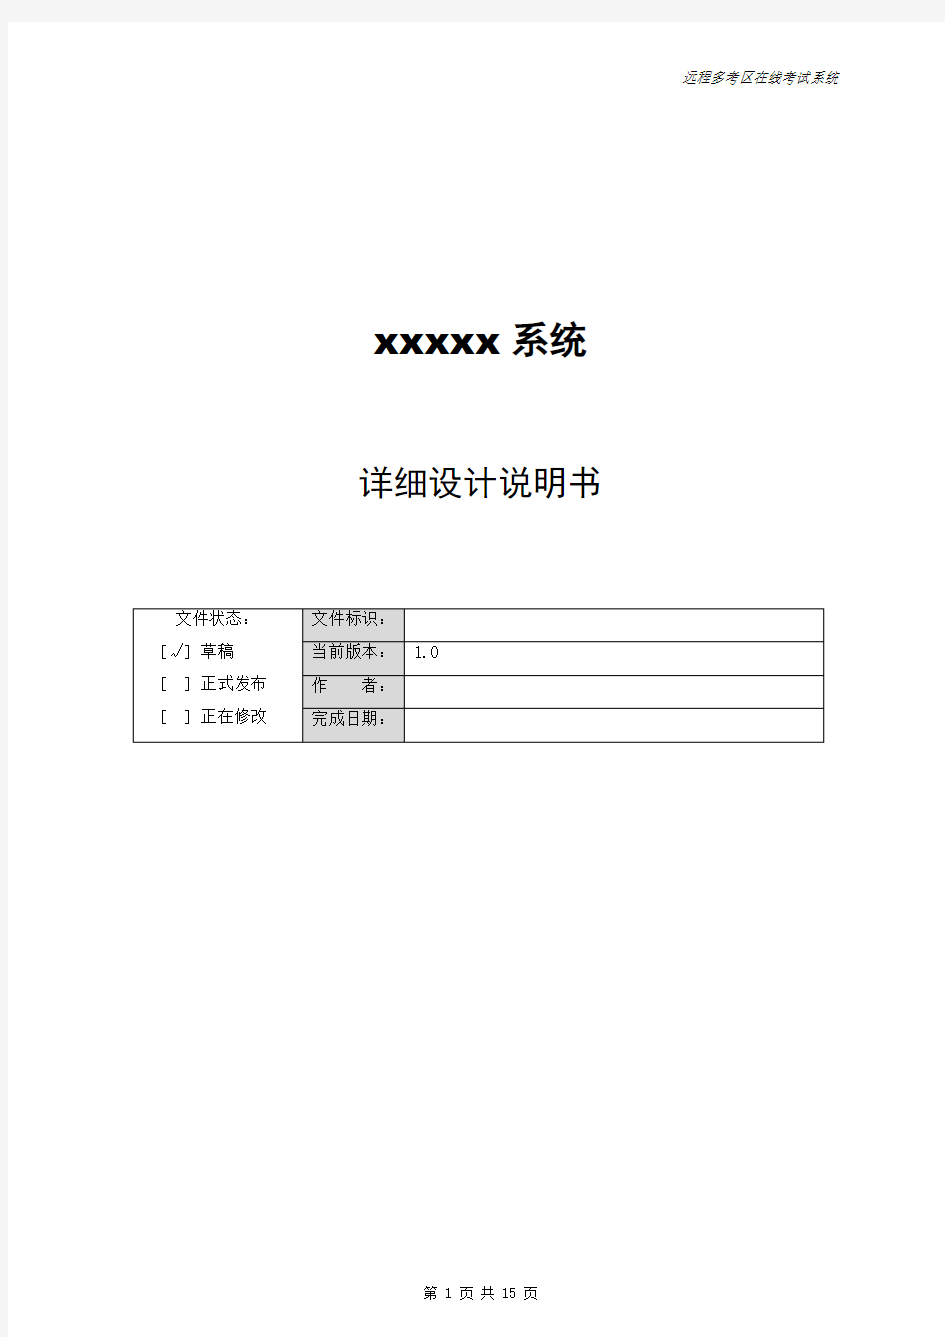 软件系统详细设计说明书模板.docx